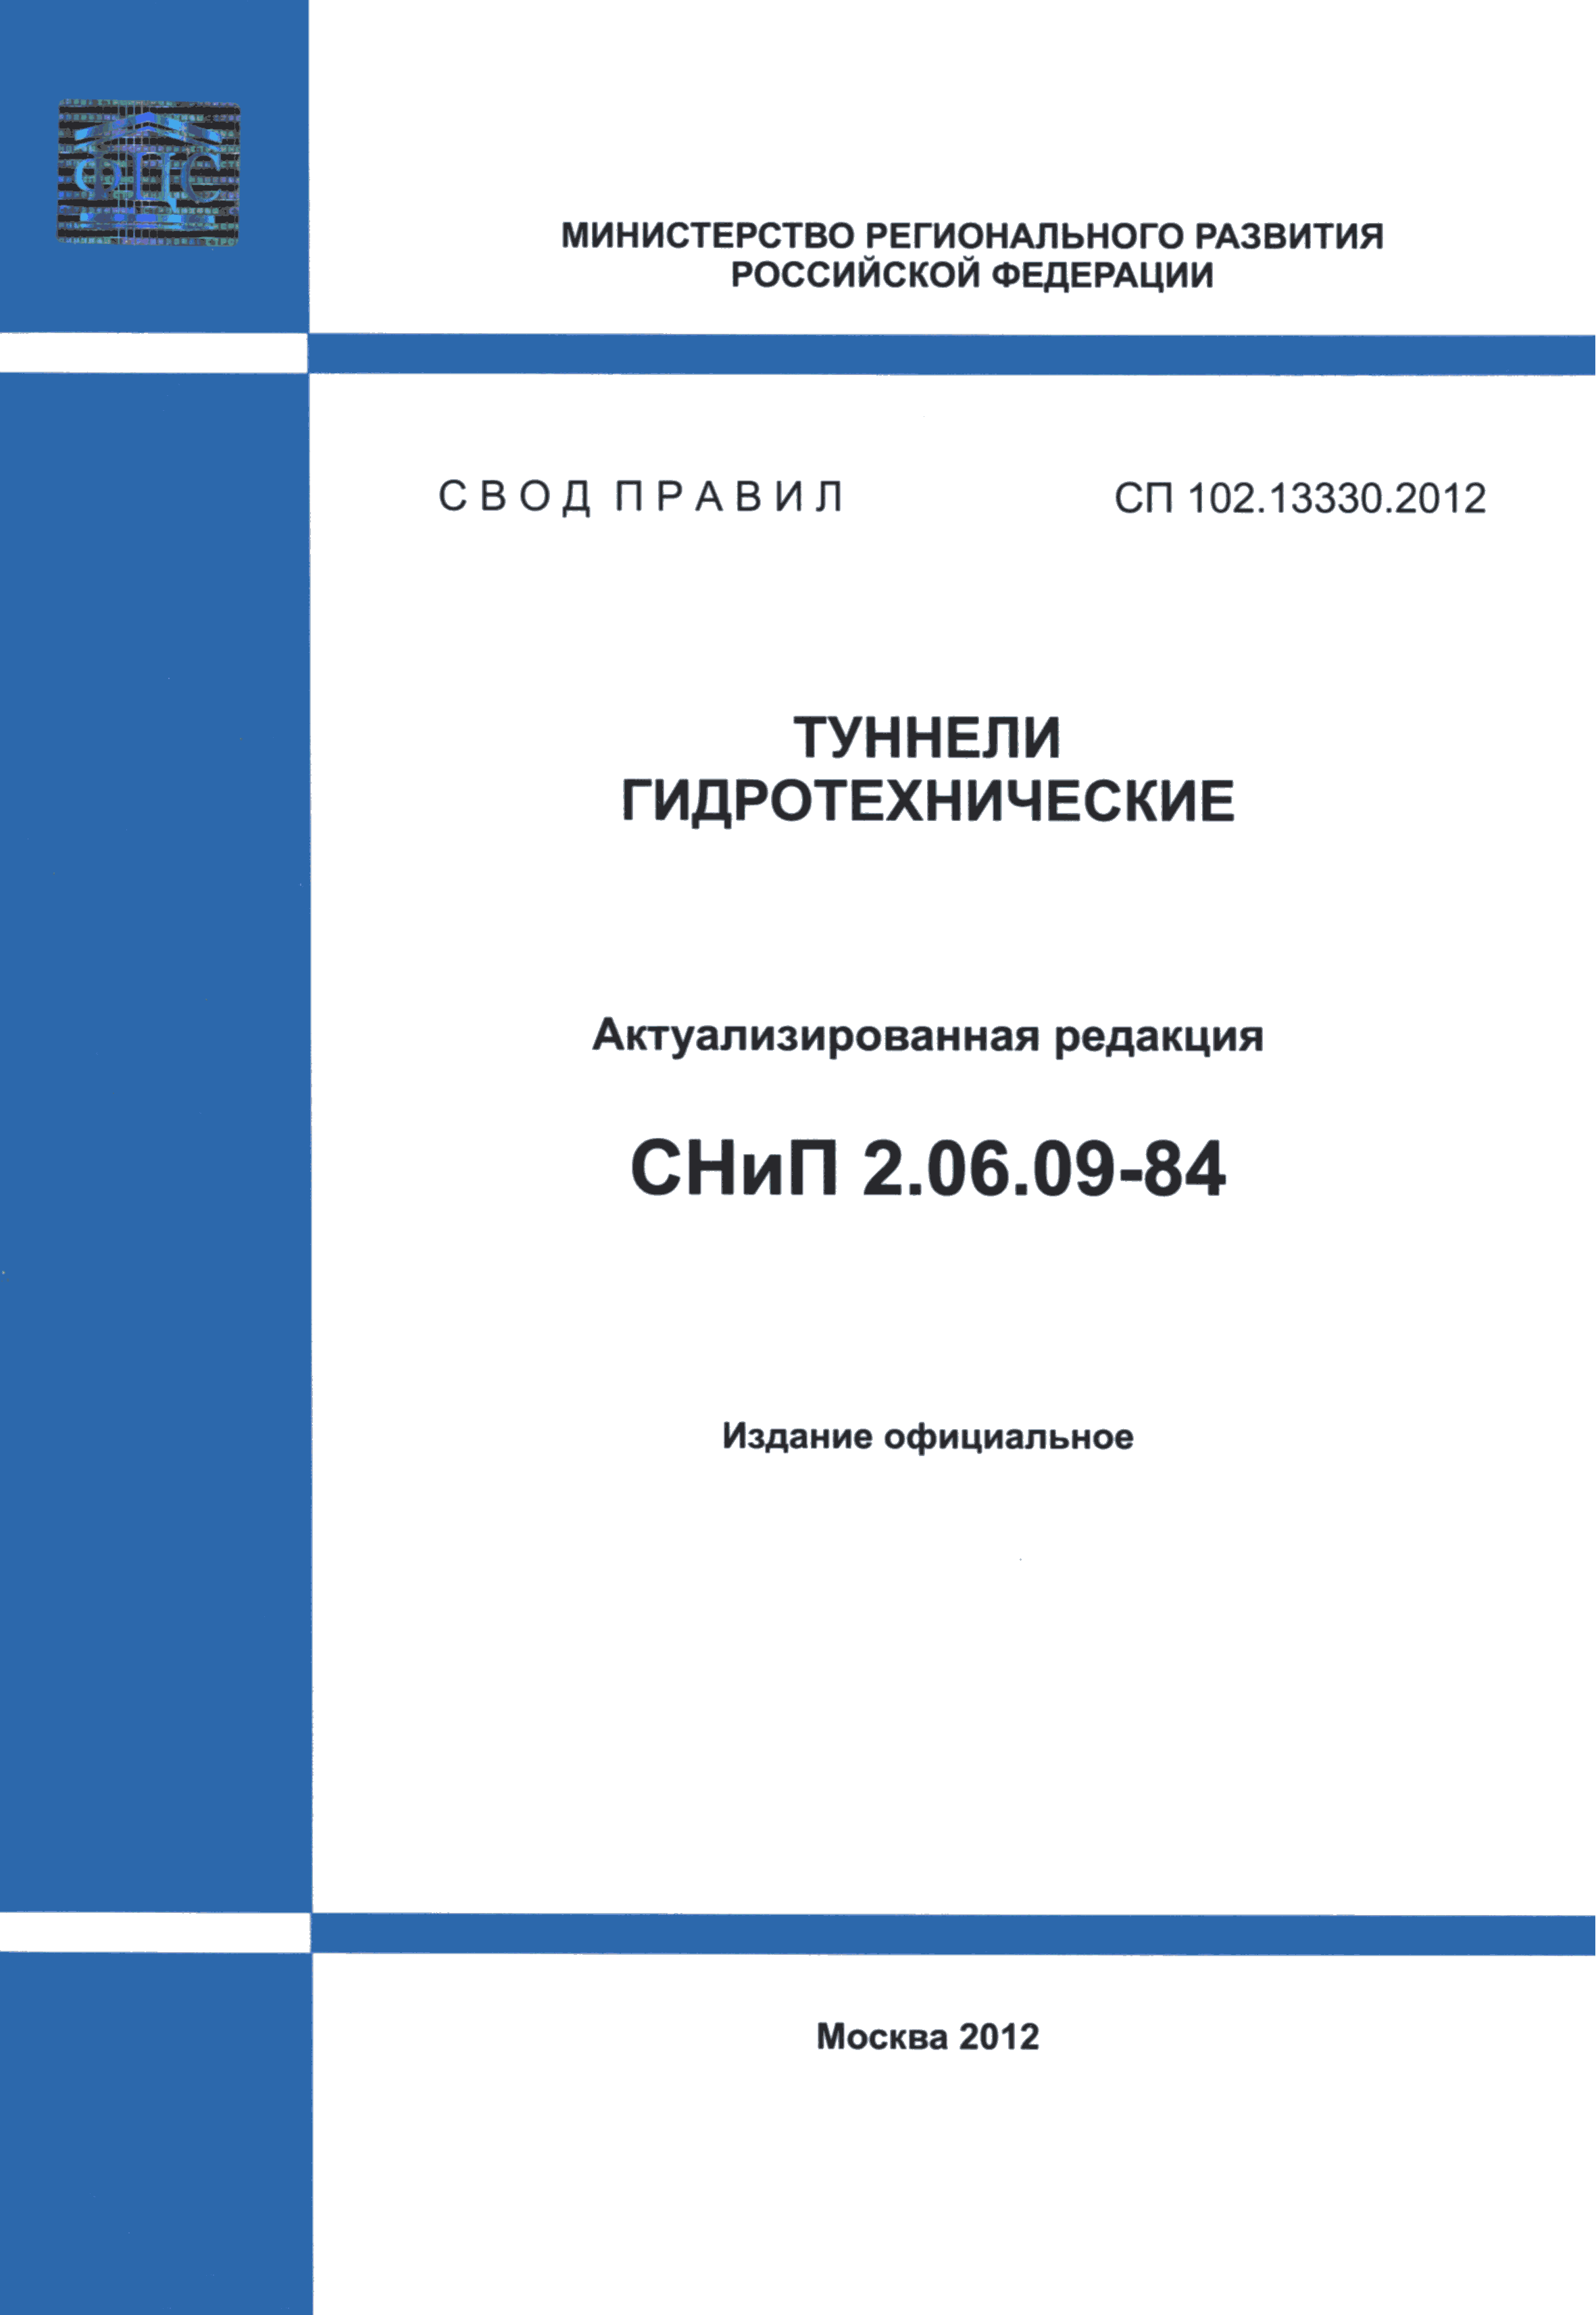 СП 102.13330.2012